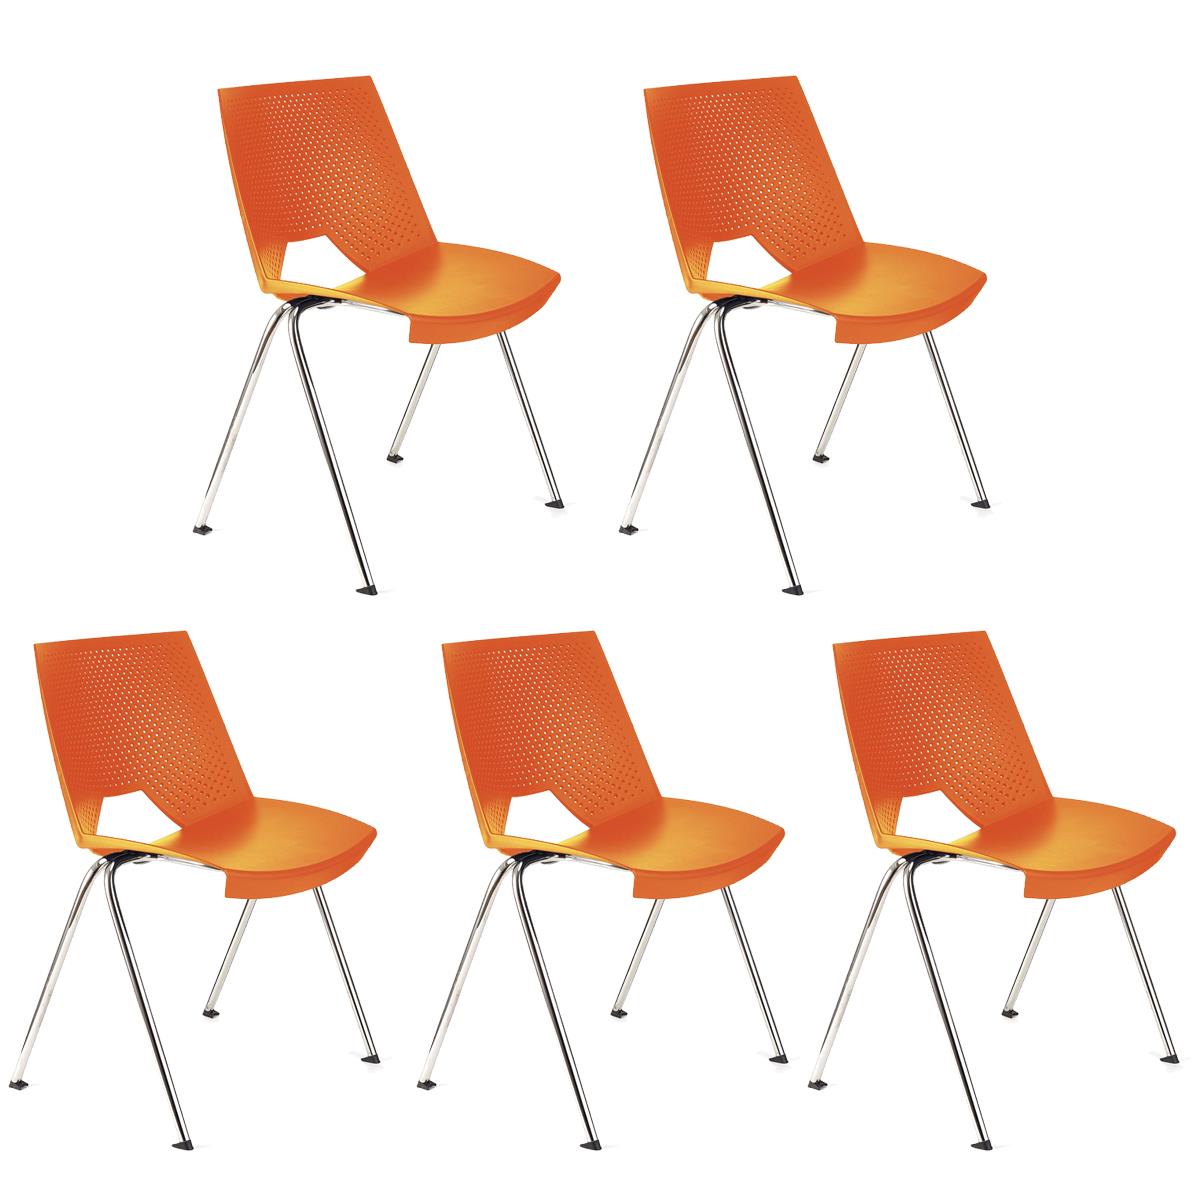 Lote 5 Cadeiras de Visita ENZO, Confortável e Prática, Empilhável, Cor Laranja